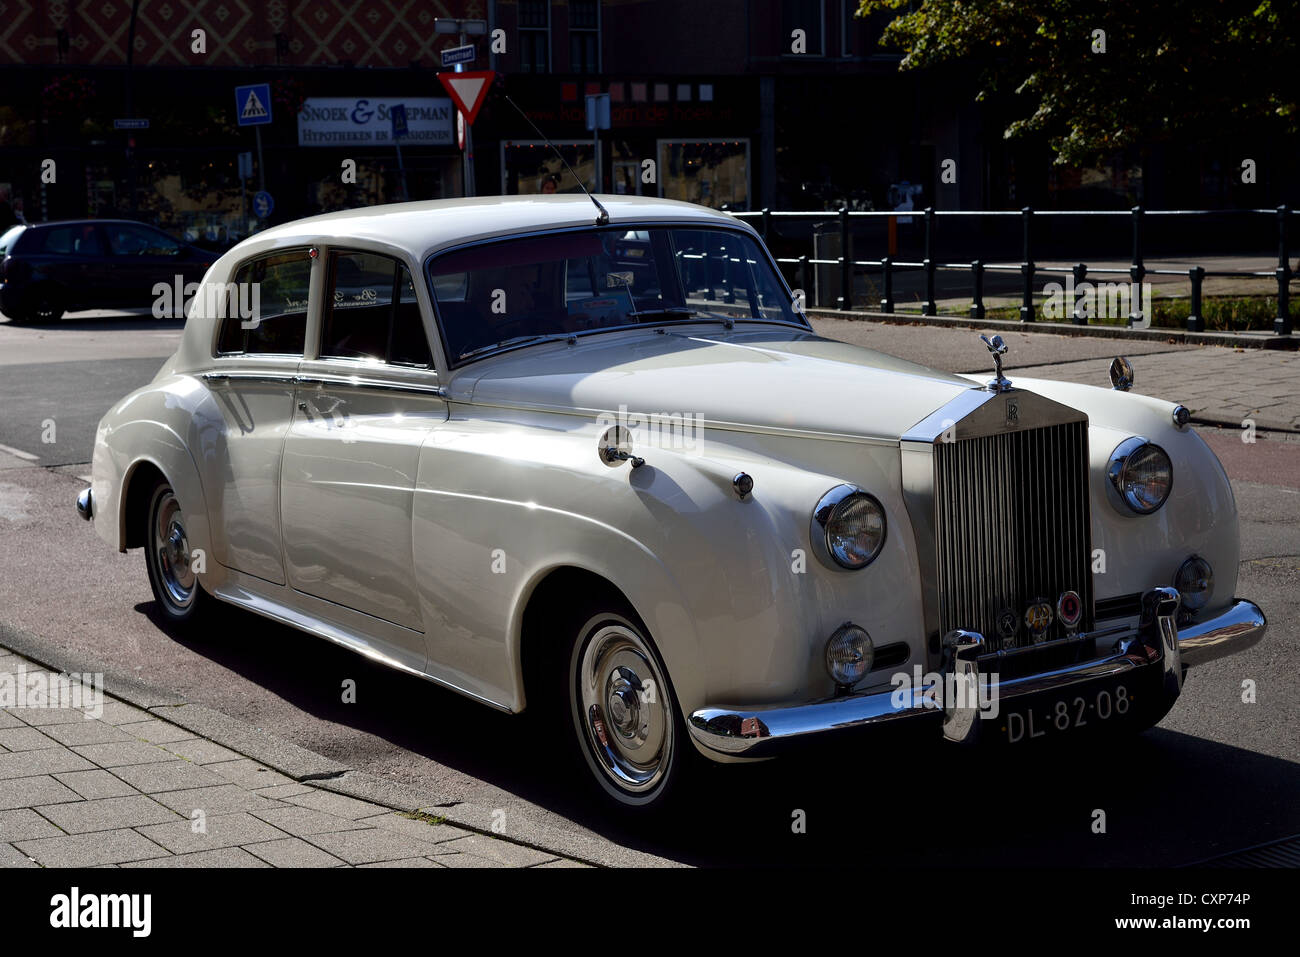 Rolls-Royce sedán blanco aparcado en la calle de La Haya, Países Bajos. Foto de stock